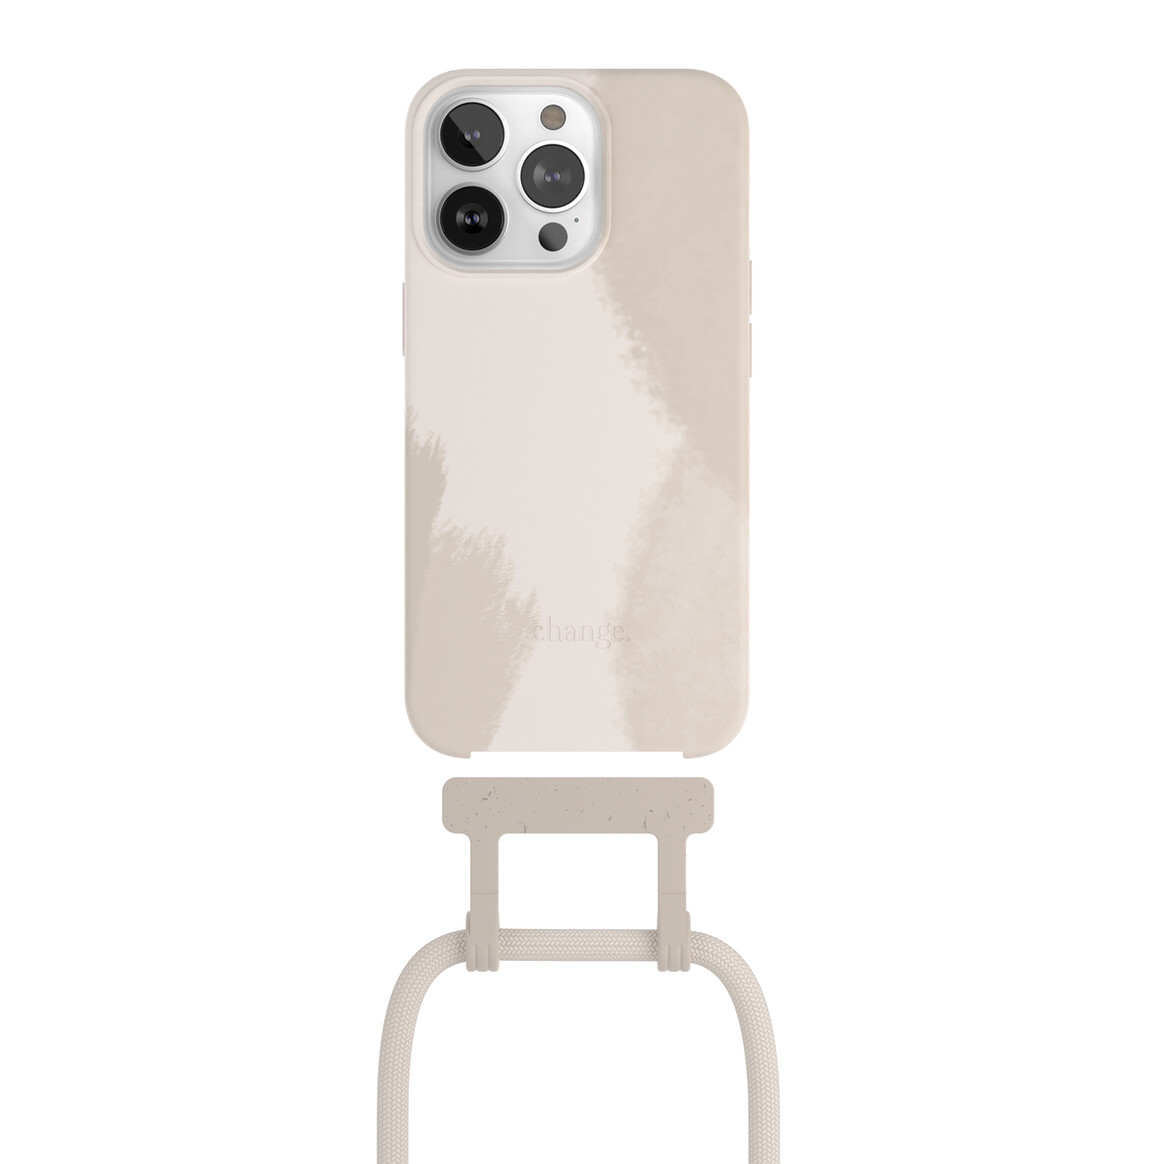 <h1>Woodcessories Change Case Batik für iPhone 13 Pro Max, creme weiß</h1>